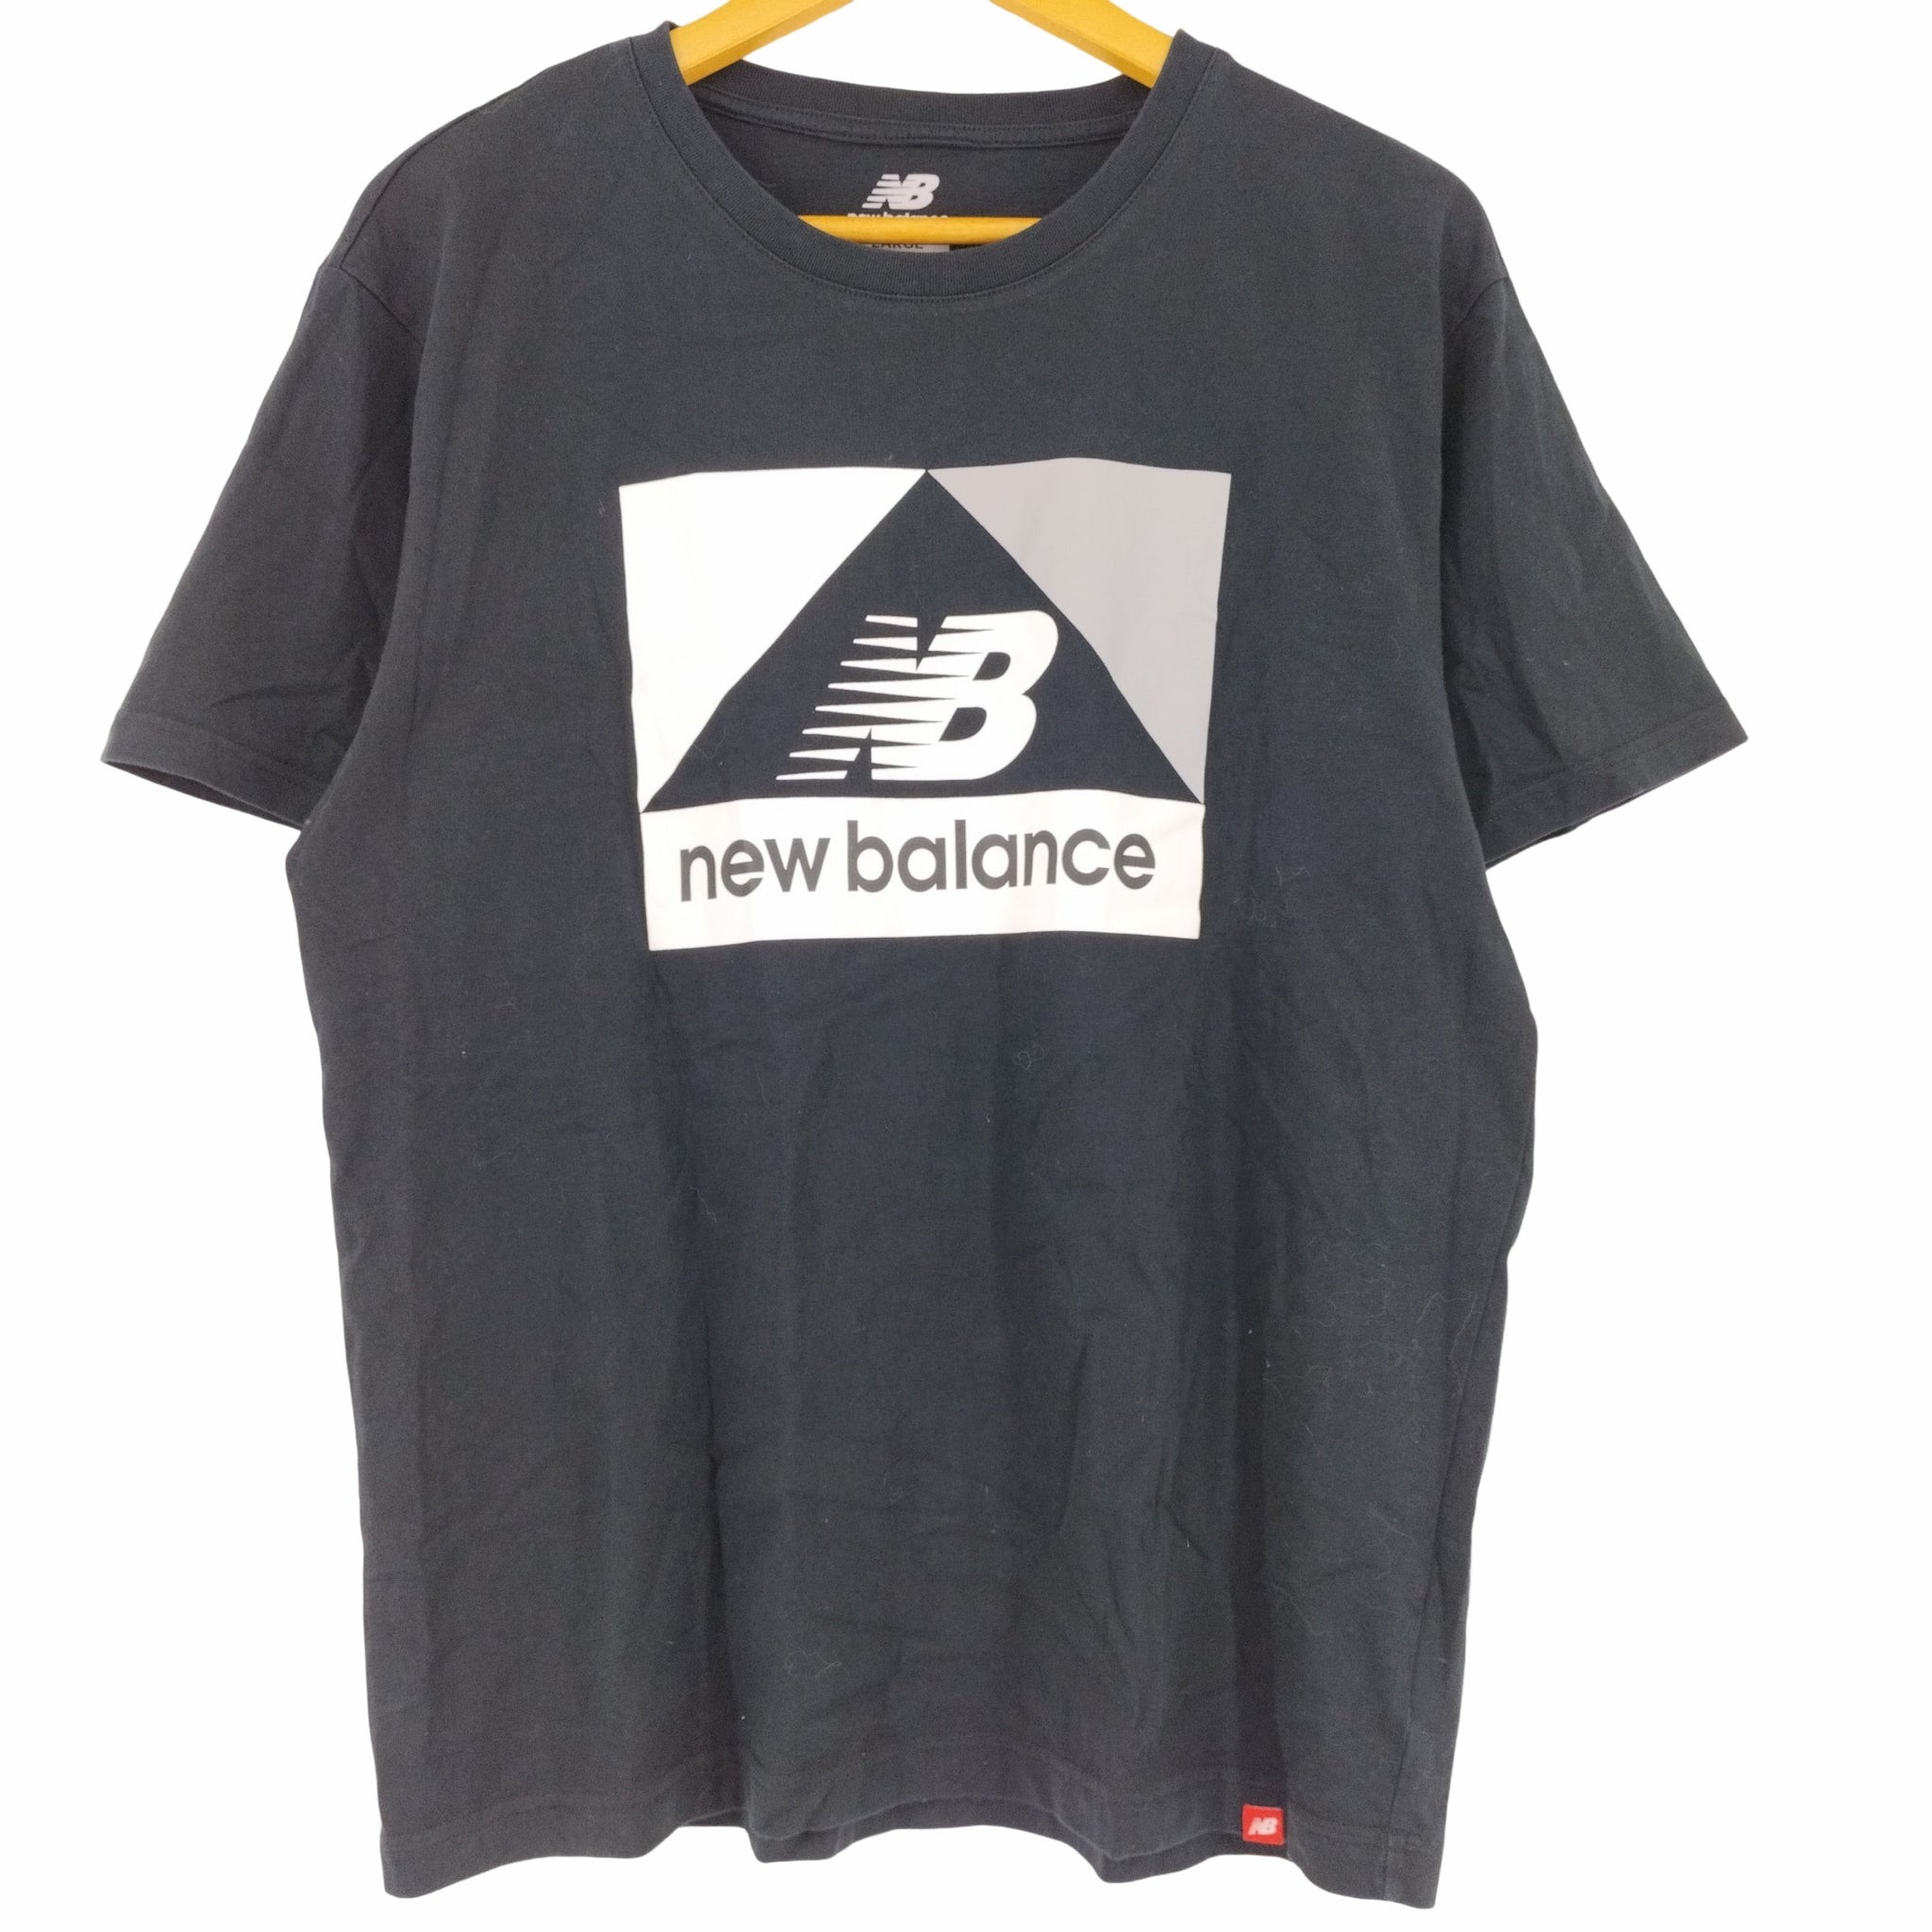 NEW BALANCE(ニューバランス)NBアスレチックアーカイブ S/S TEE